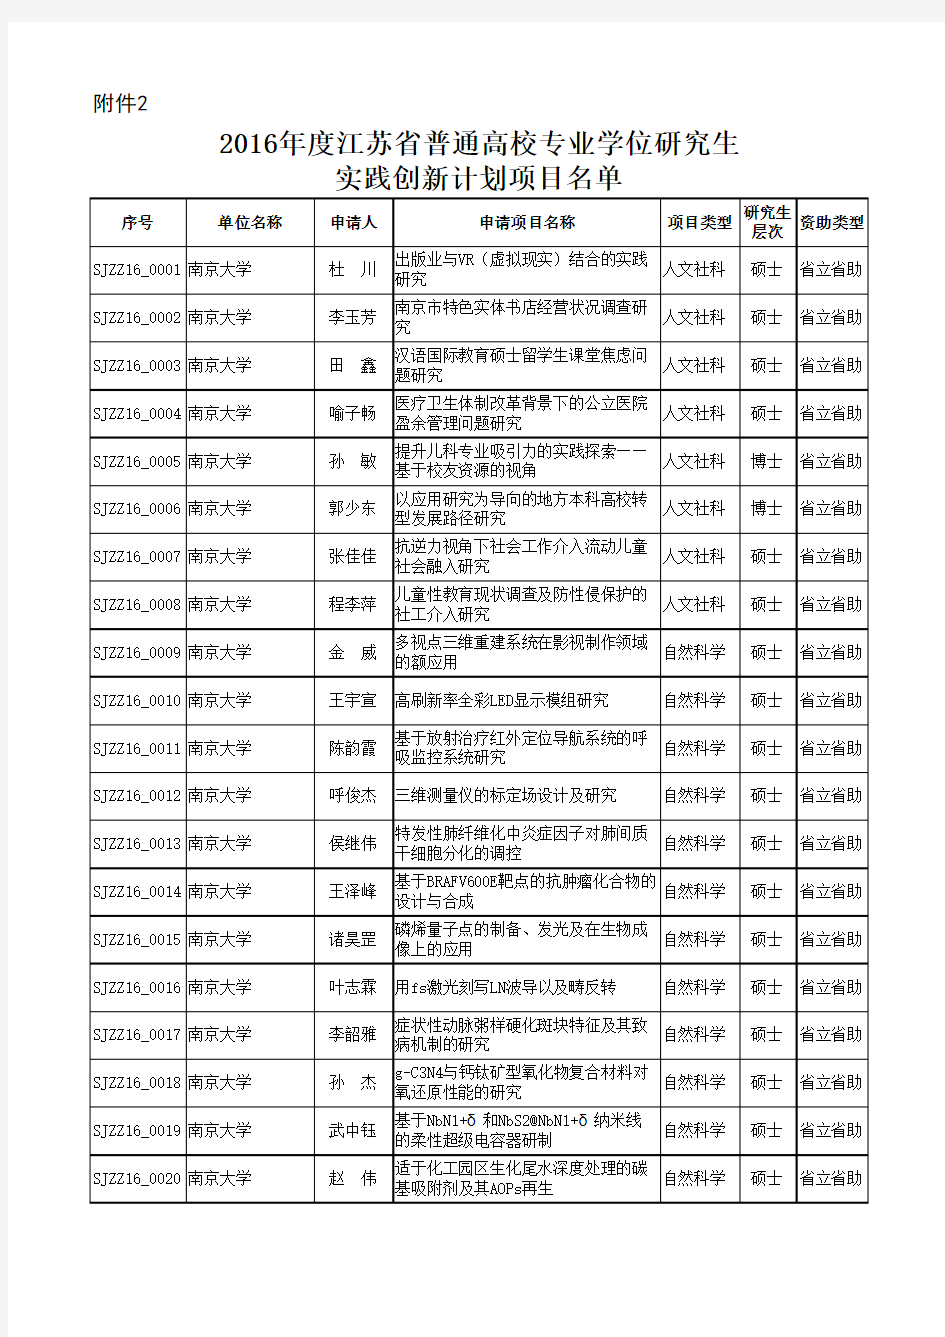 2016年江苏省研究生创新项目名单